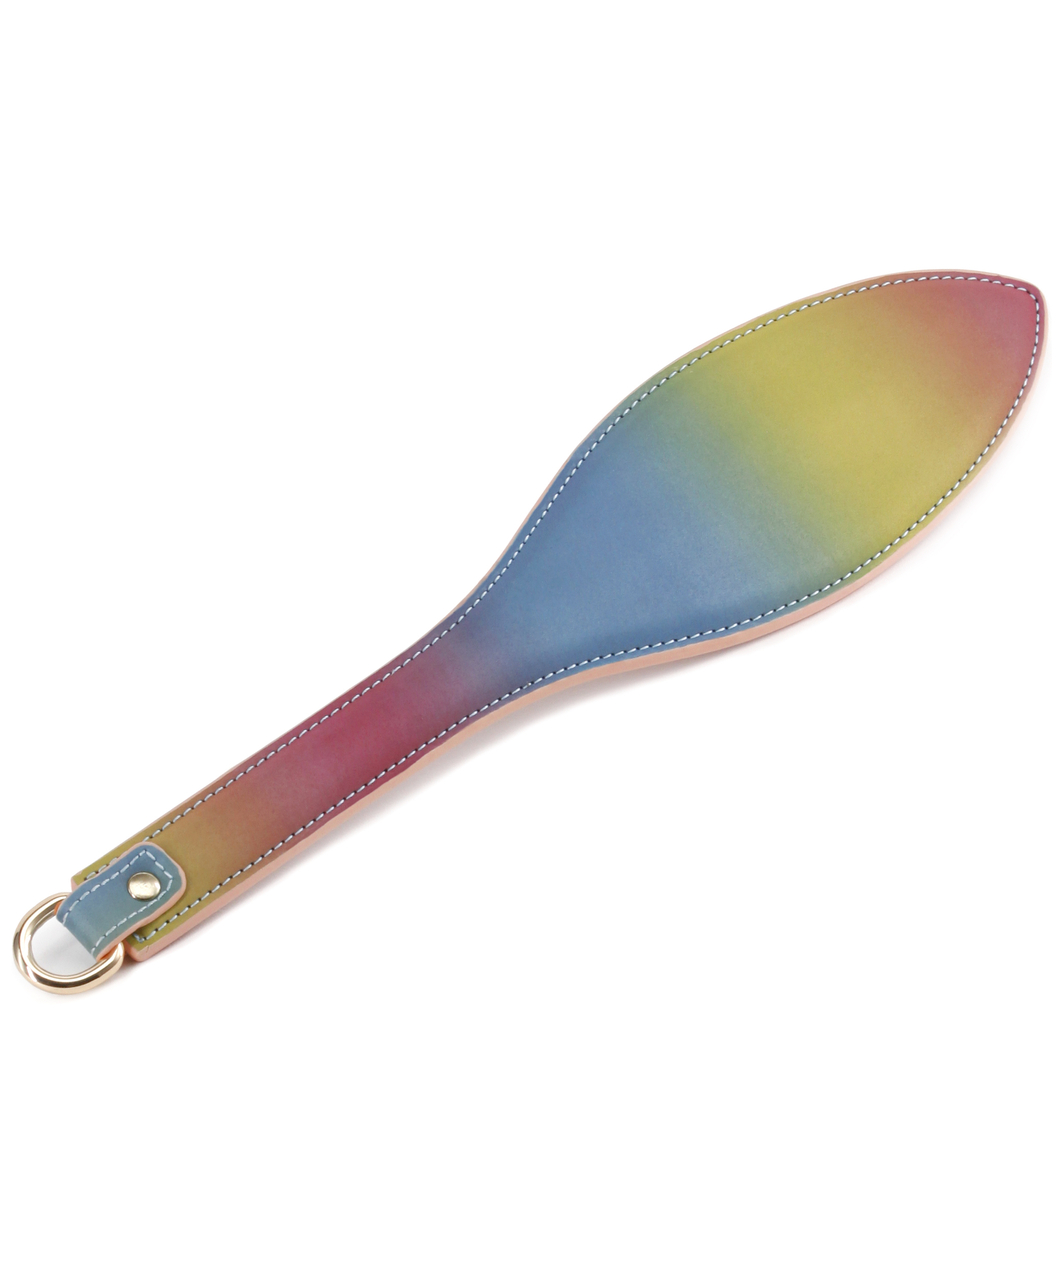 NS Novelties Spectra Bondage paddle